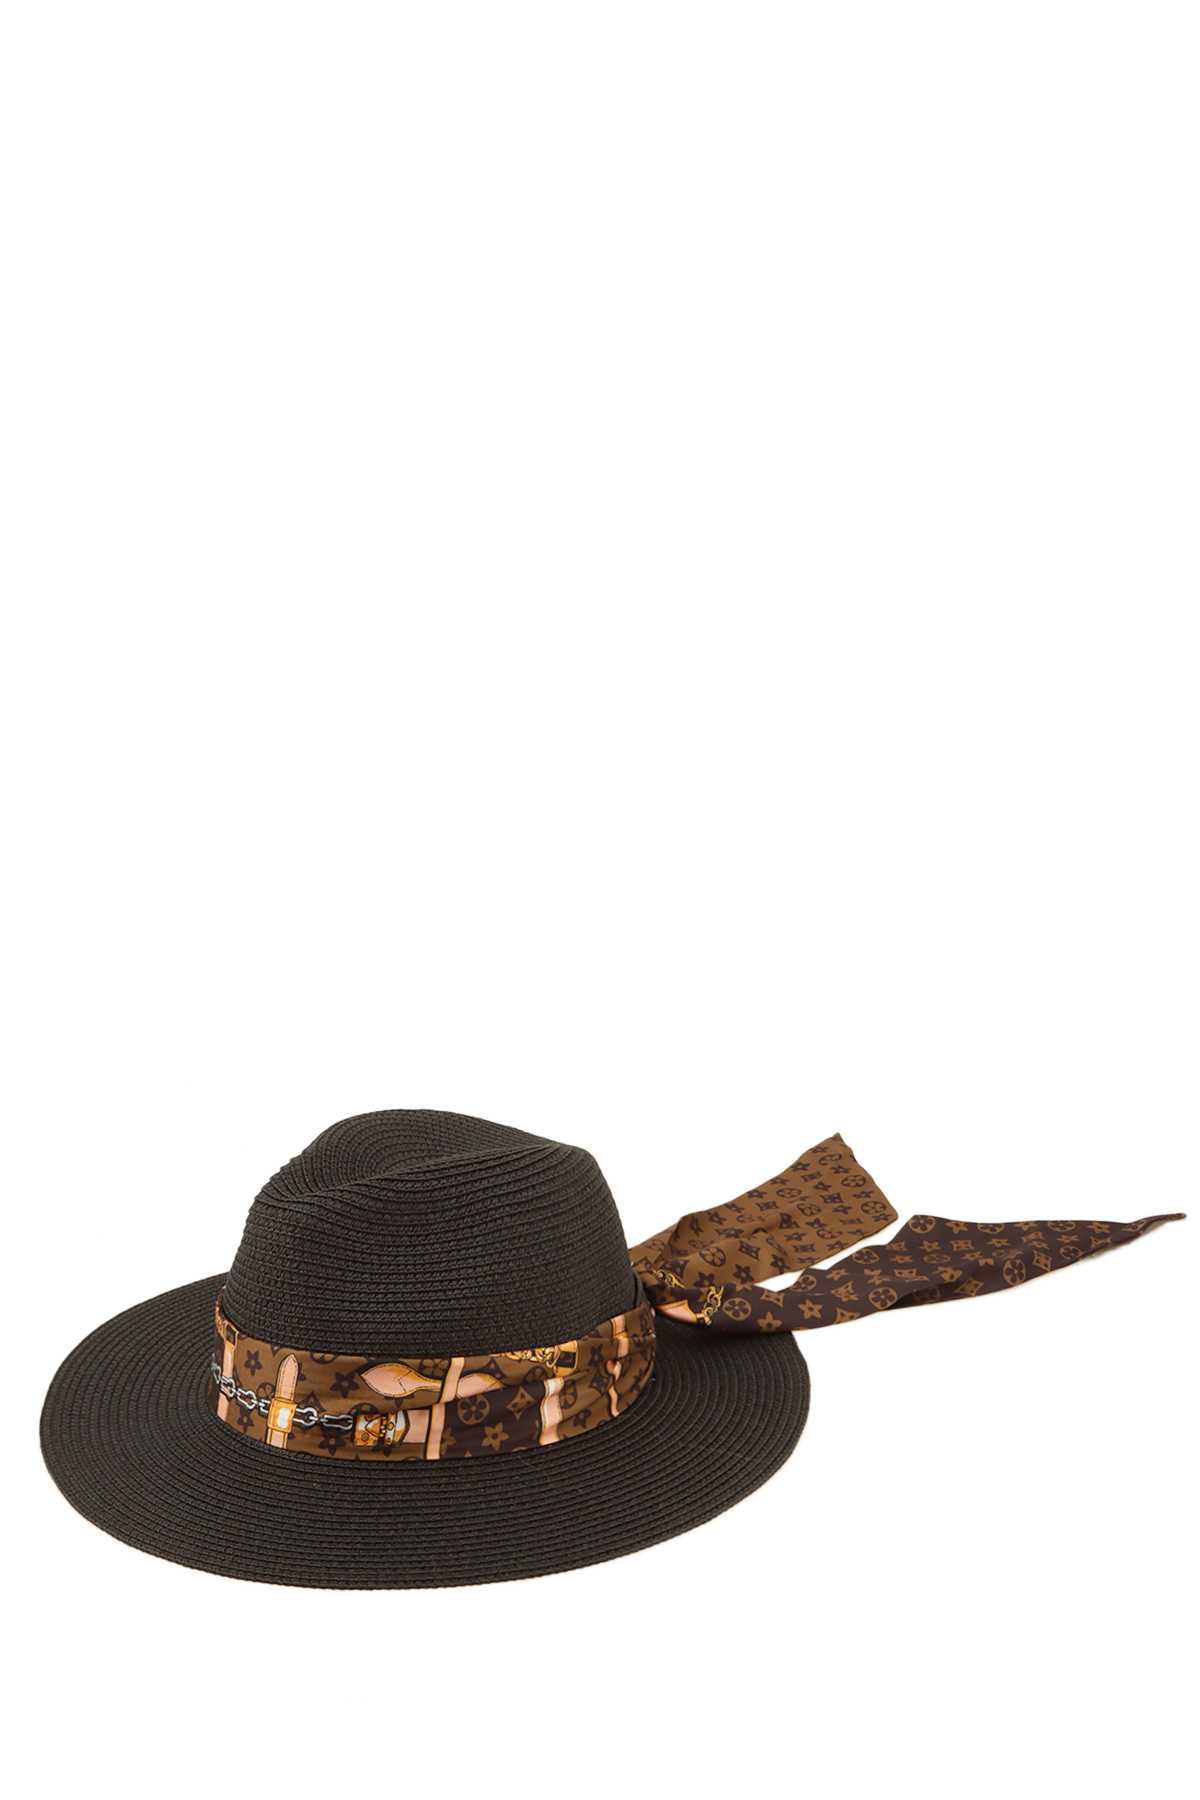 Geometric Chain Scarves Wrap Fedora Straw Hat